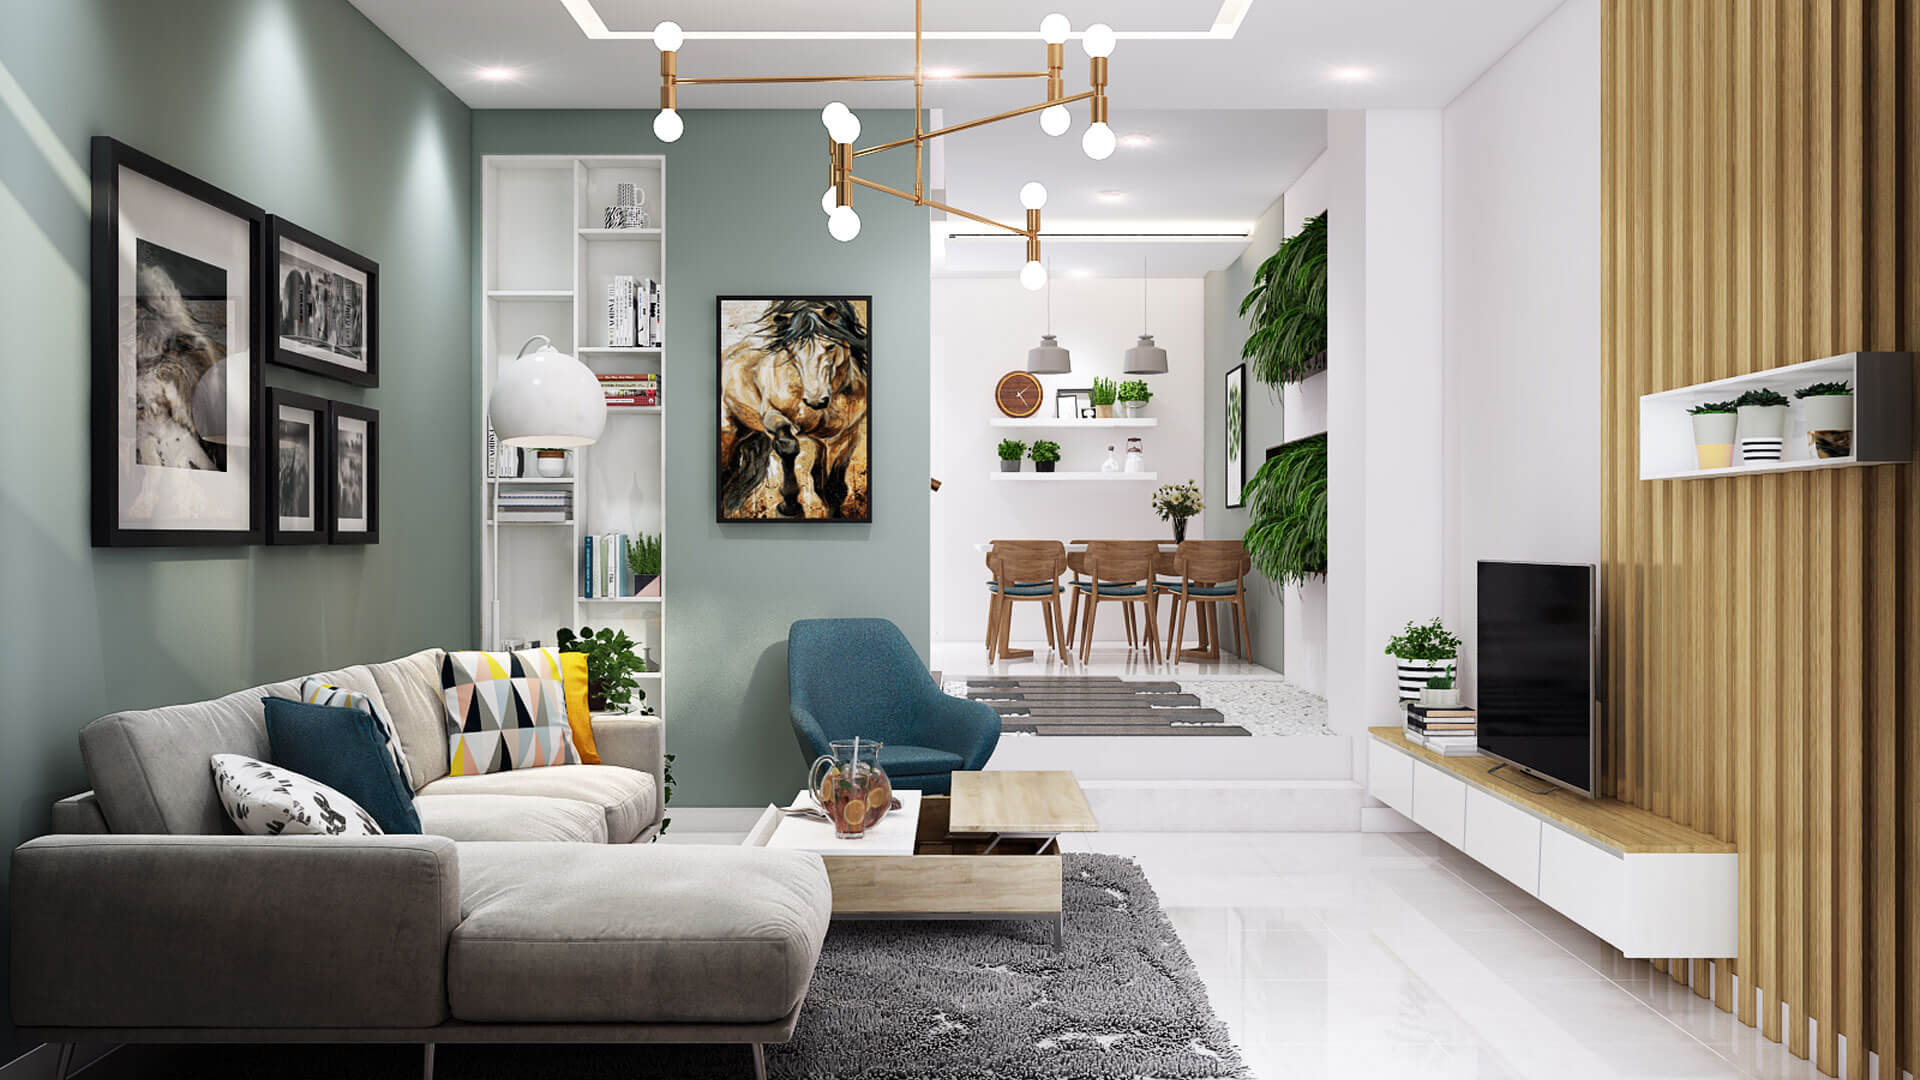 10 mẫu thiết kế nội thất phòng khách nhà ống hiện đại đẹp